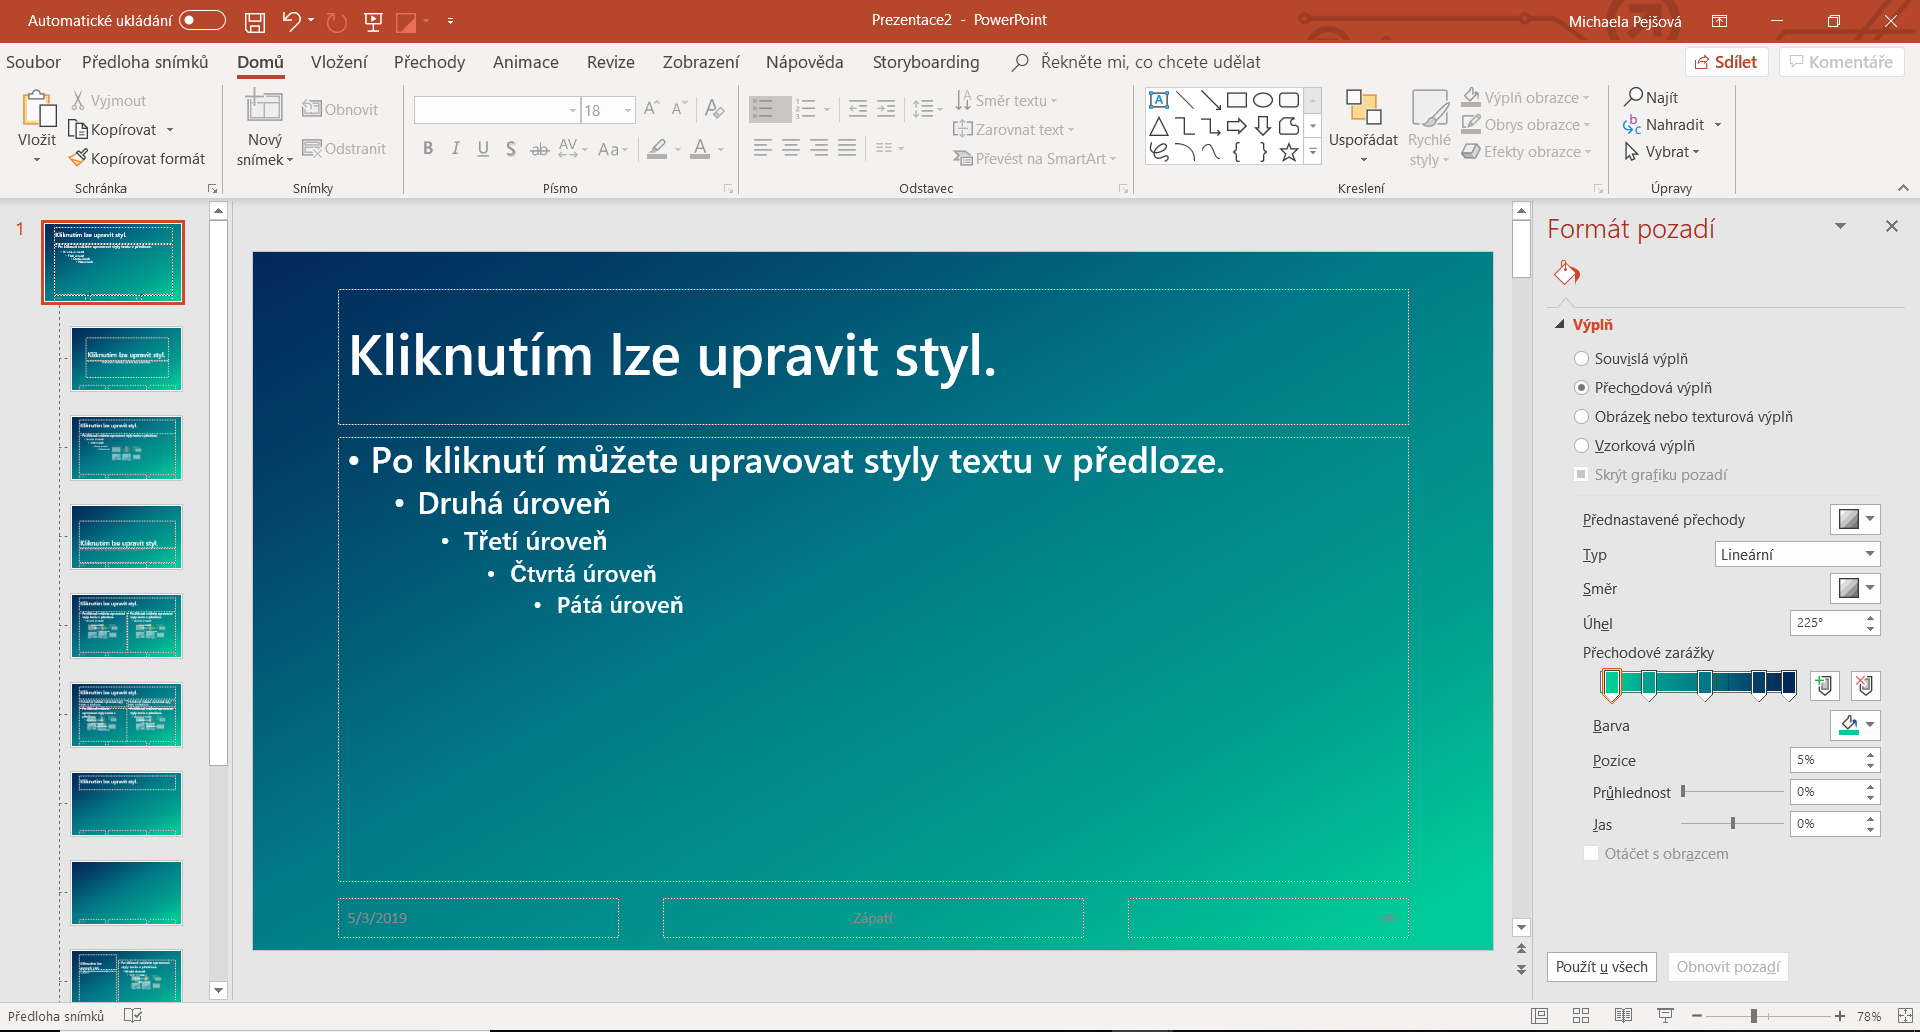 Změna barvy písma v předloze snímku v Microsoft PowerPoint - Základy Microsoft PowerPoint